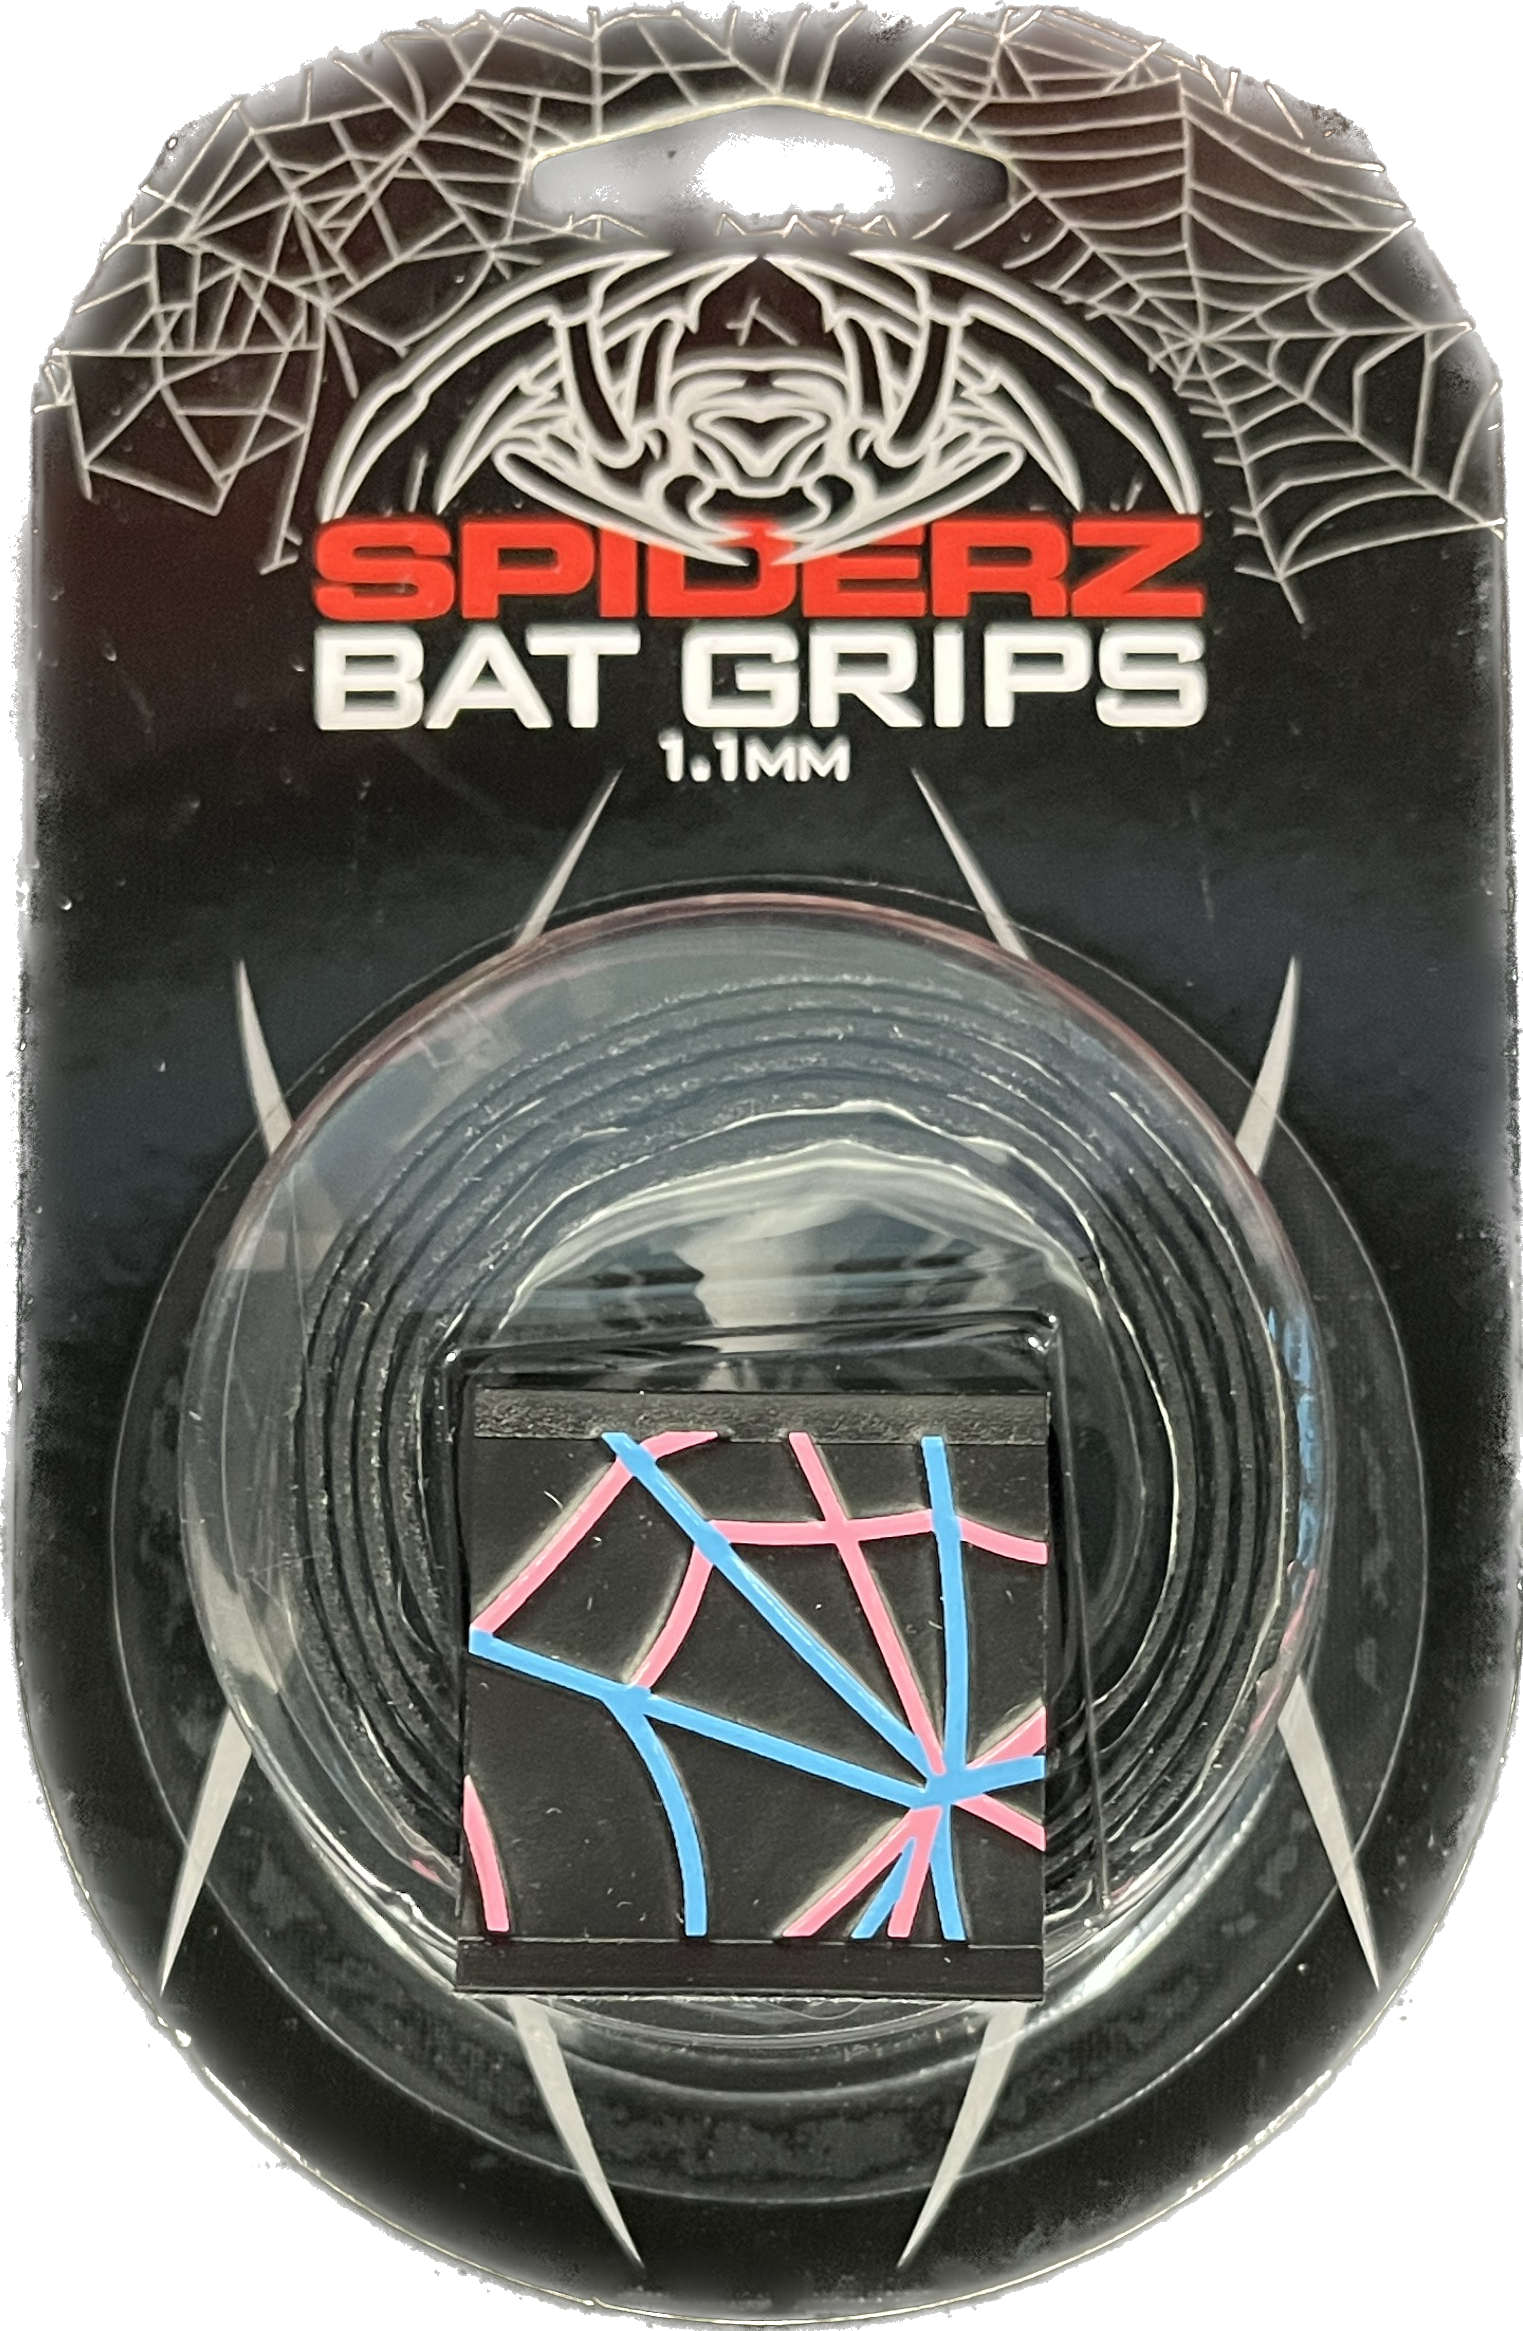 Spiderz Bat Grip (1.1 mm) - Black Vice